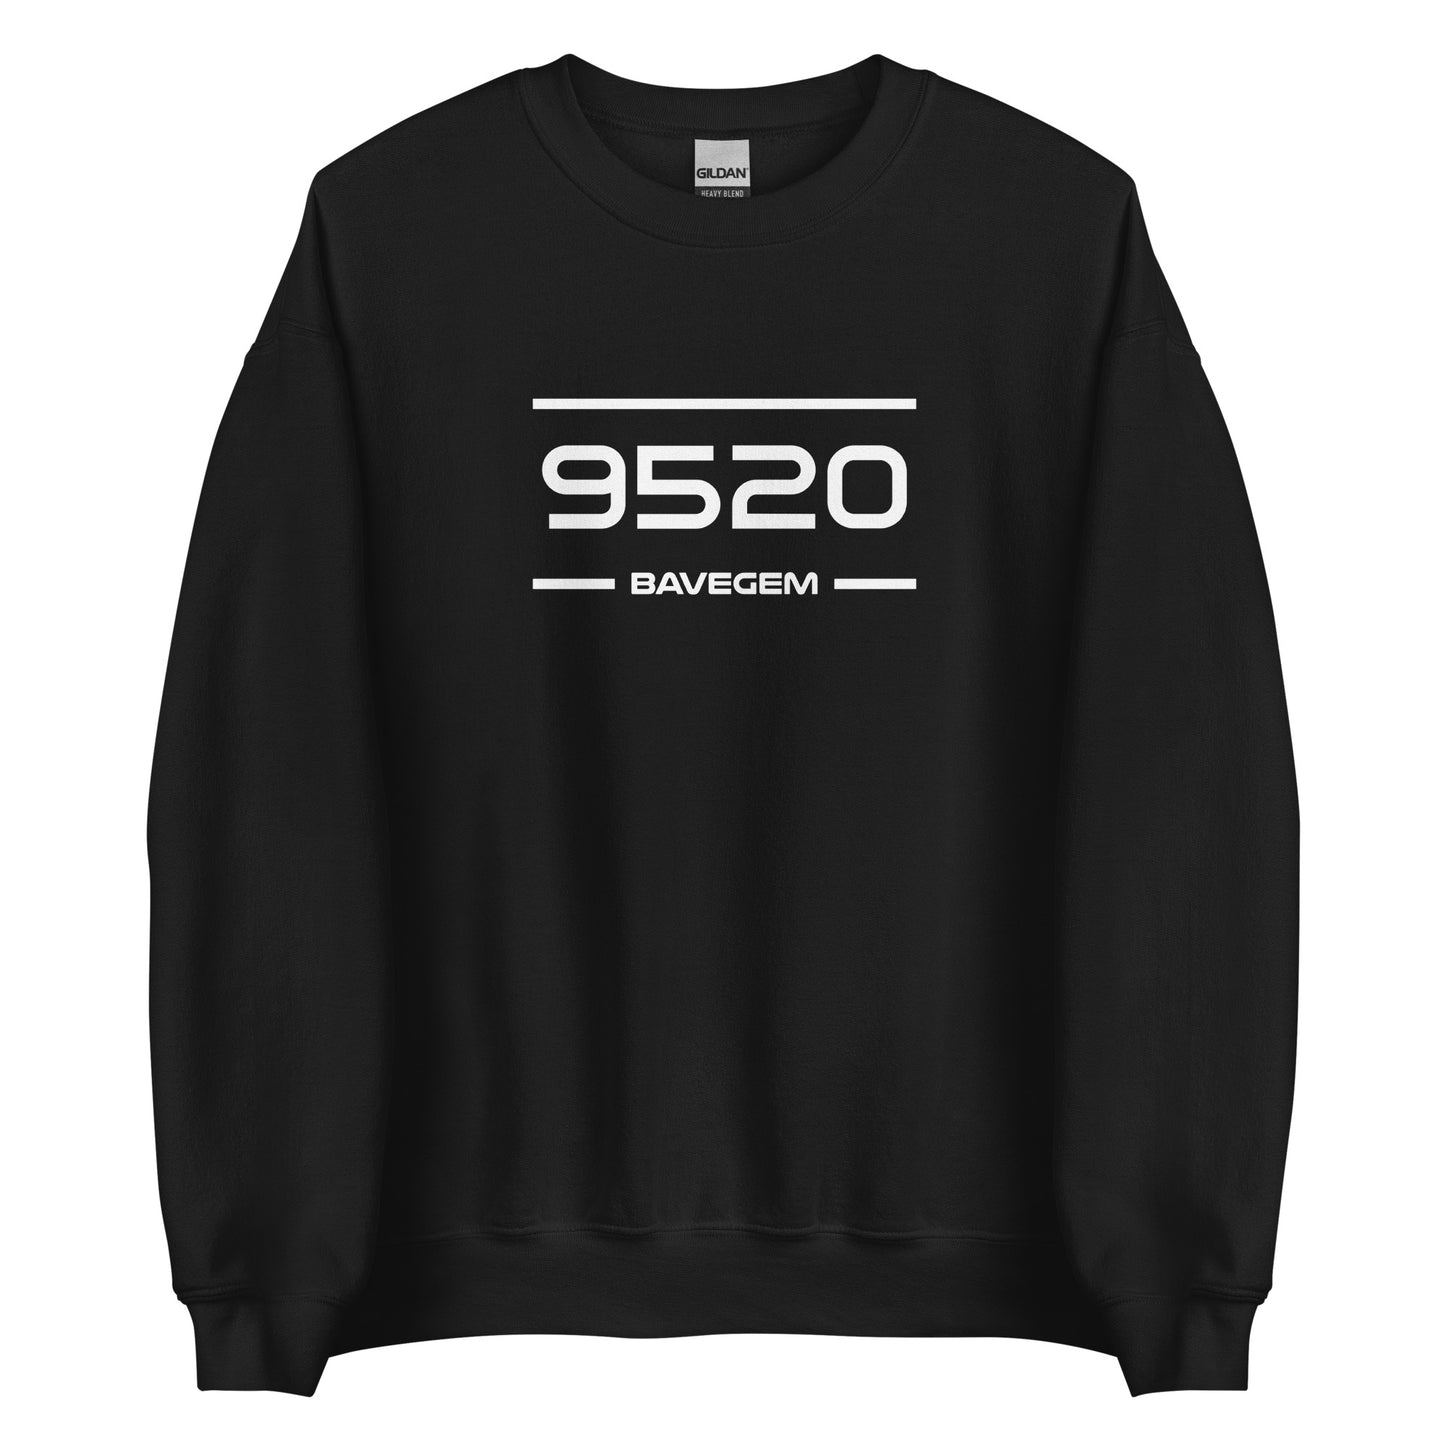 Sweater - 9520 - Bavegem (M/V)